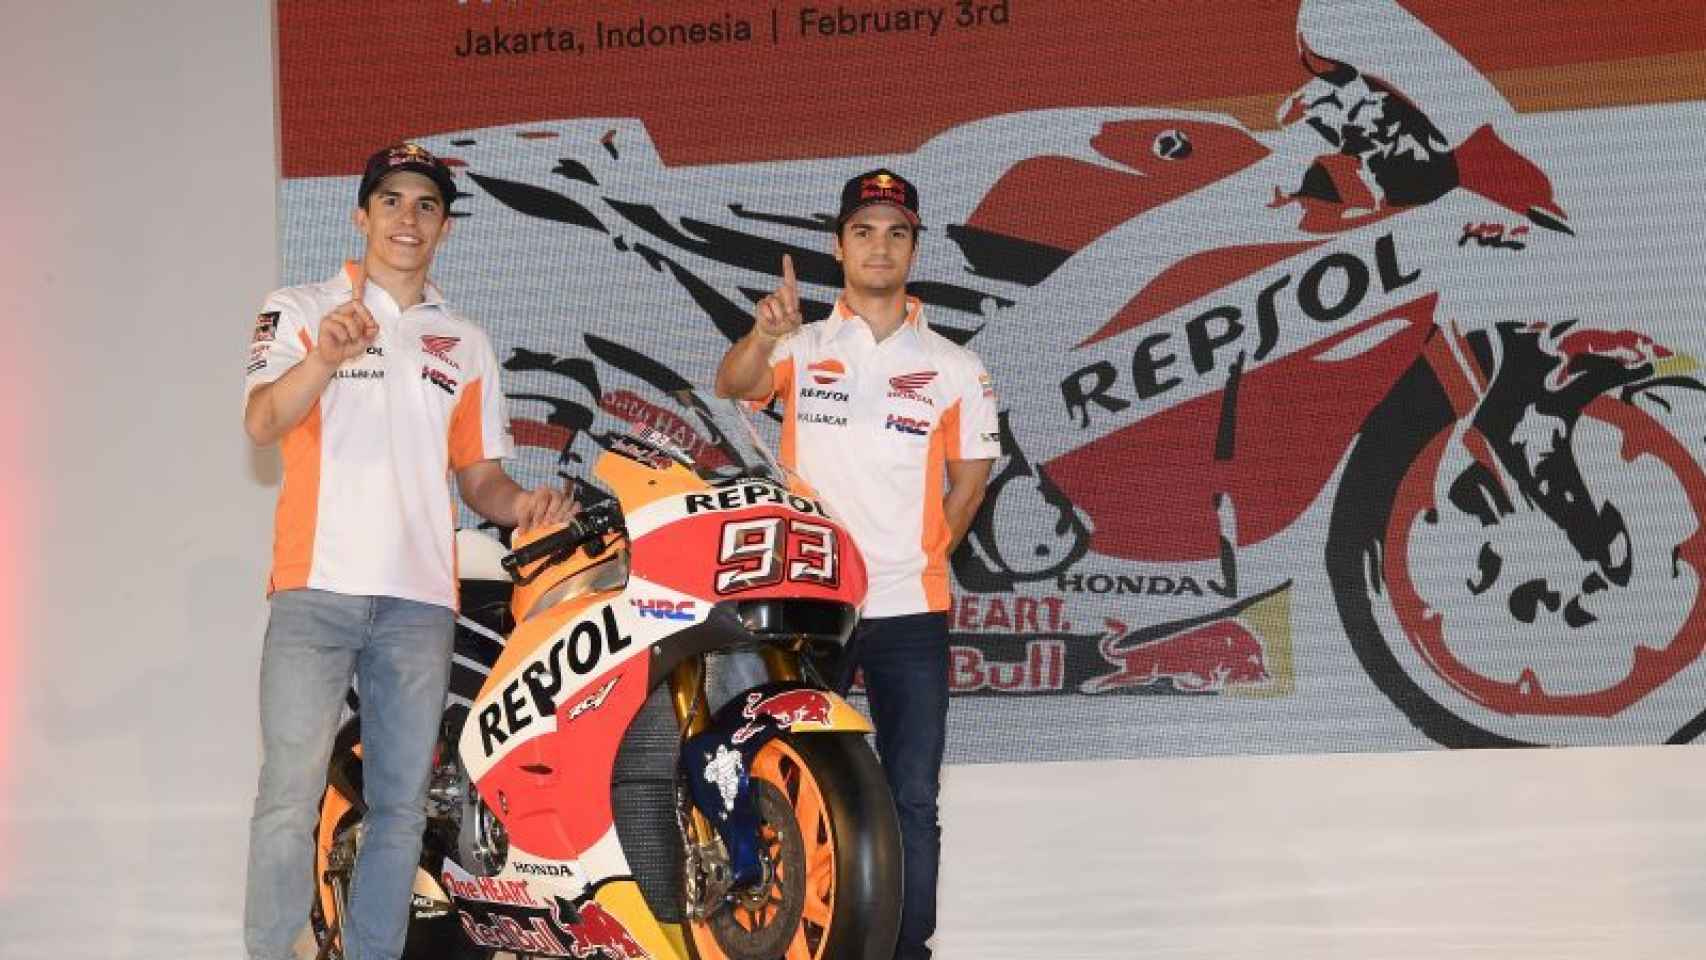 Marc Márquez y Dani Pedrosa, durante la presentación del equipo Repsol Honda en Jakarta.